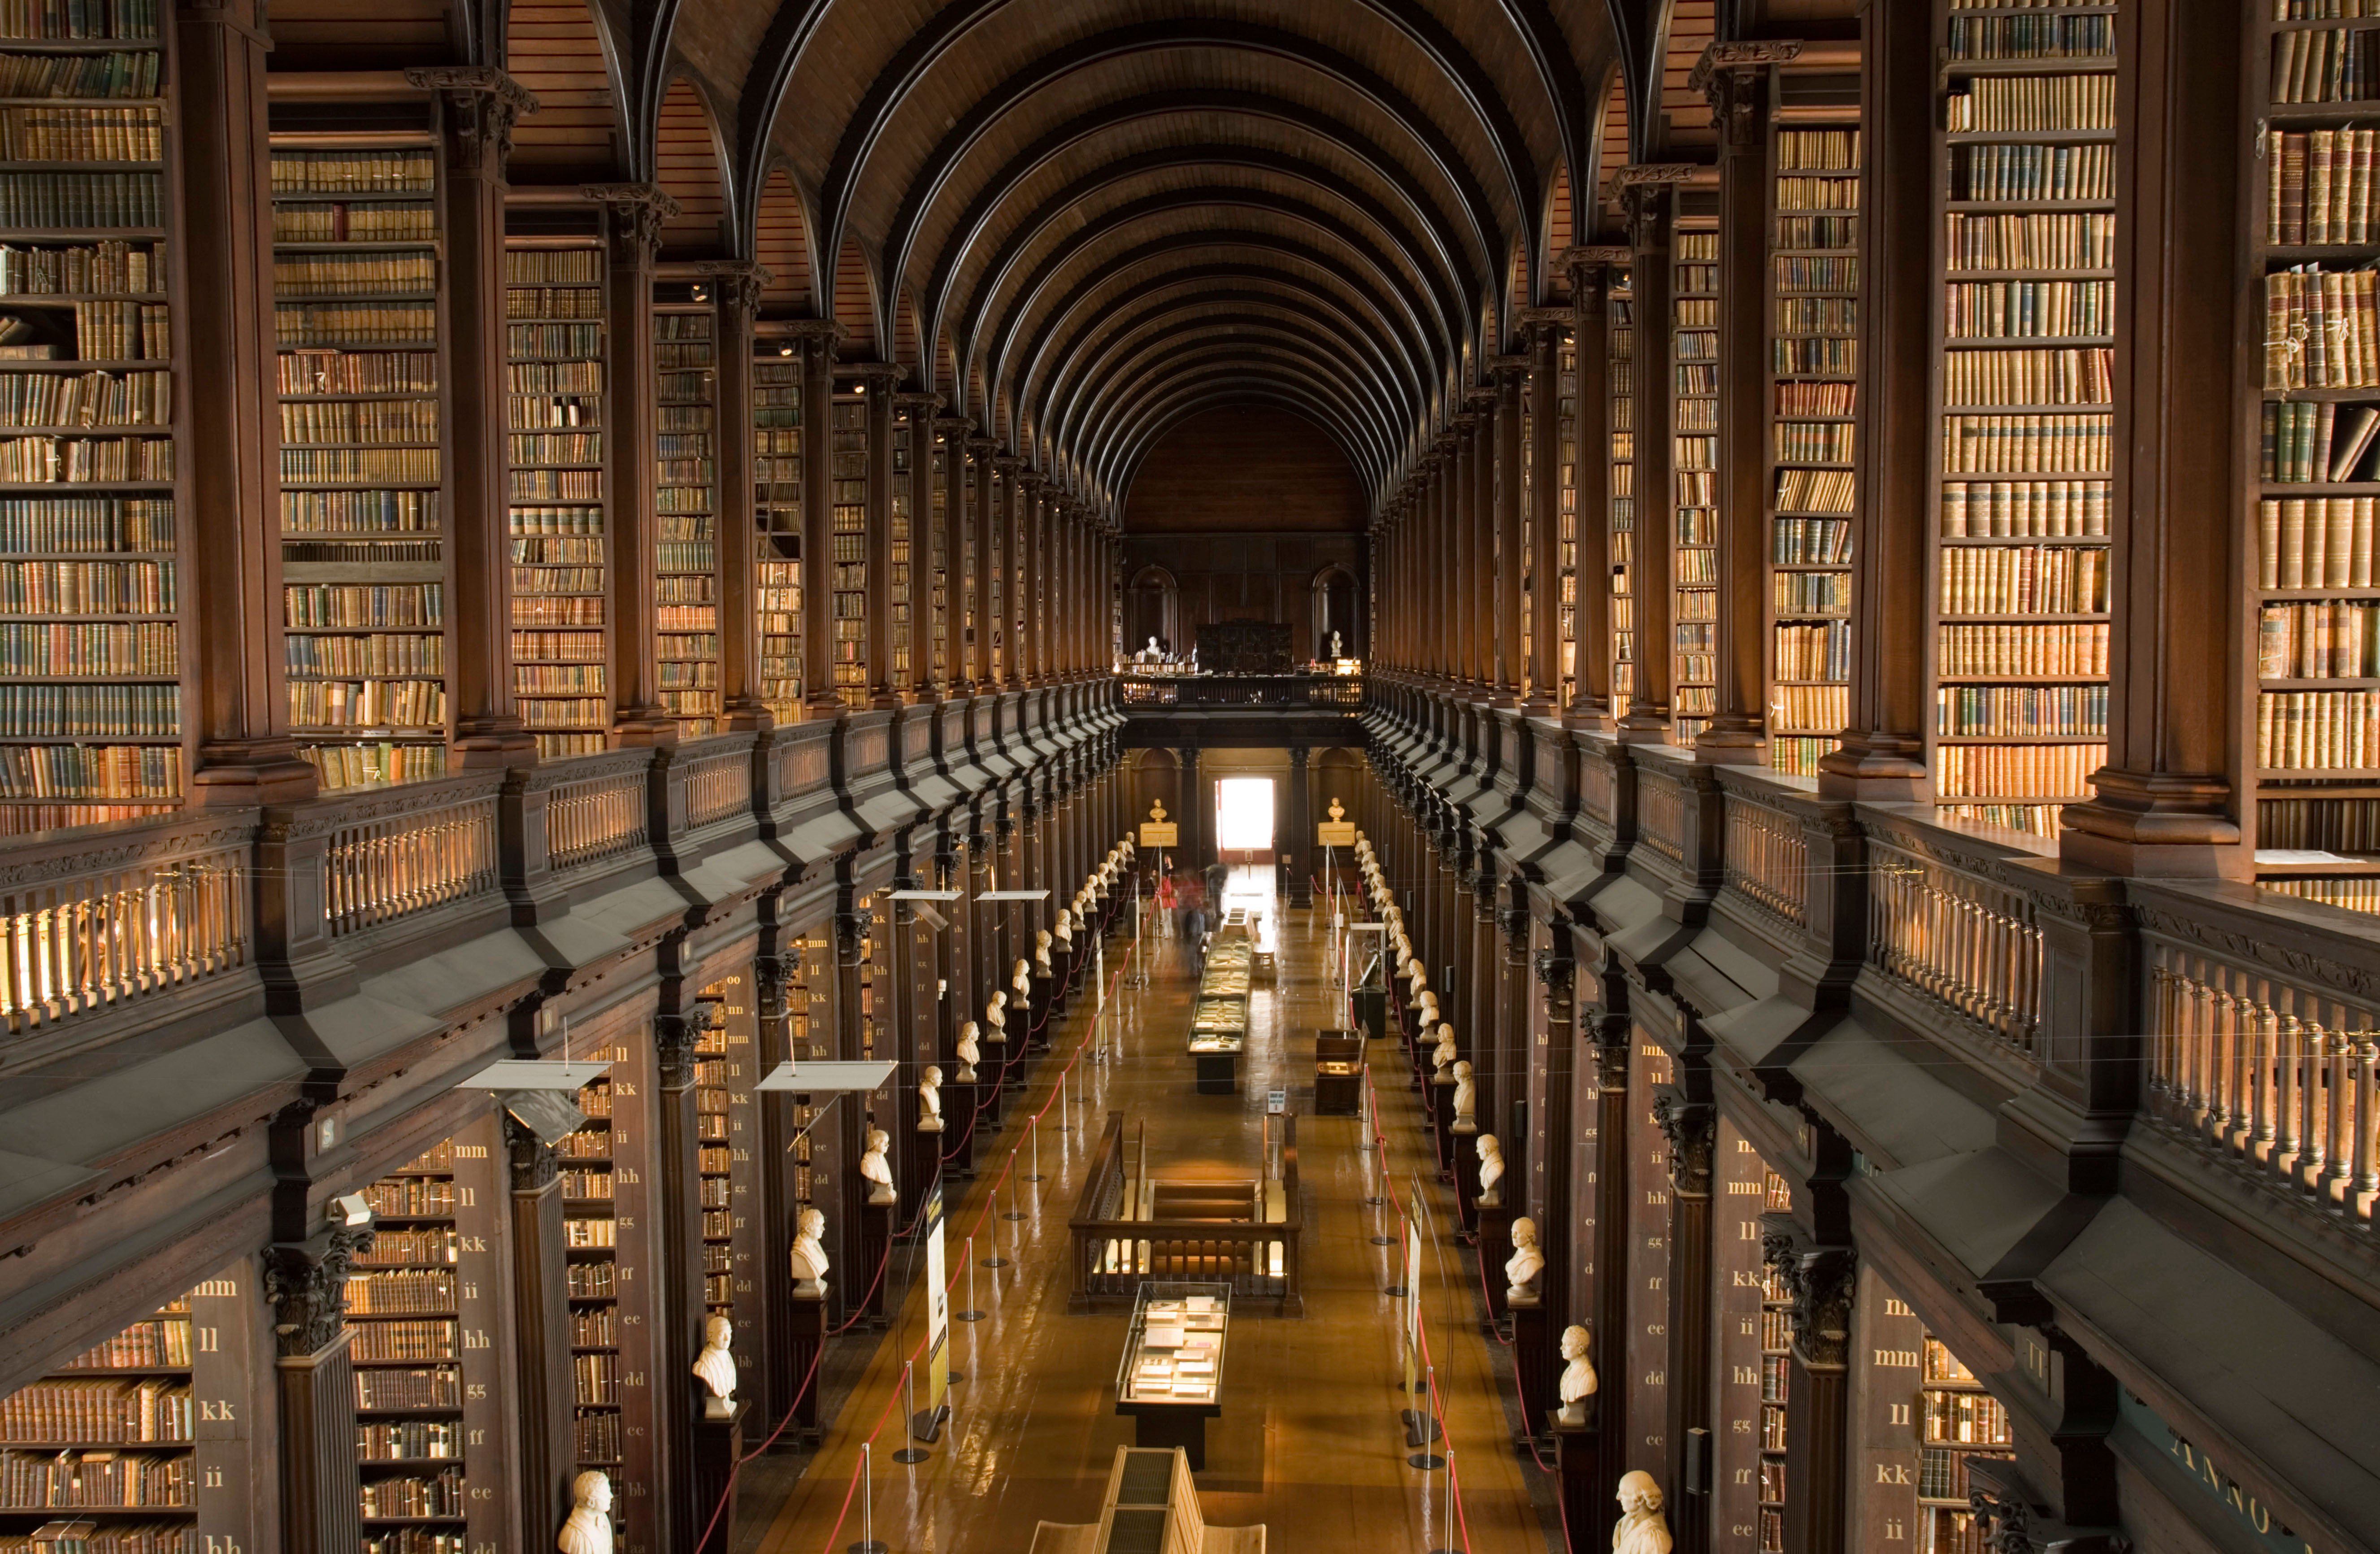 Libraries guide. Библиотека Тринити-колледжа в Кембридже. Библиотека Тринити-колледжа в Дублине. Библиотека Тринити-колледжа, Дублин, Ирландия. Тринити-колледж Кембриджского университета.